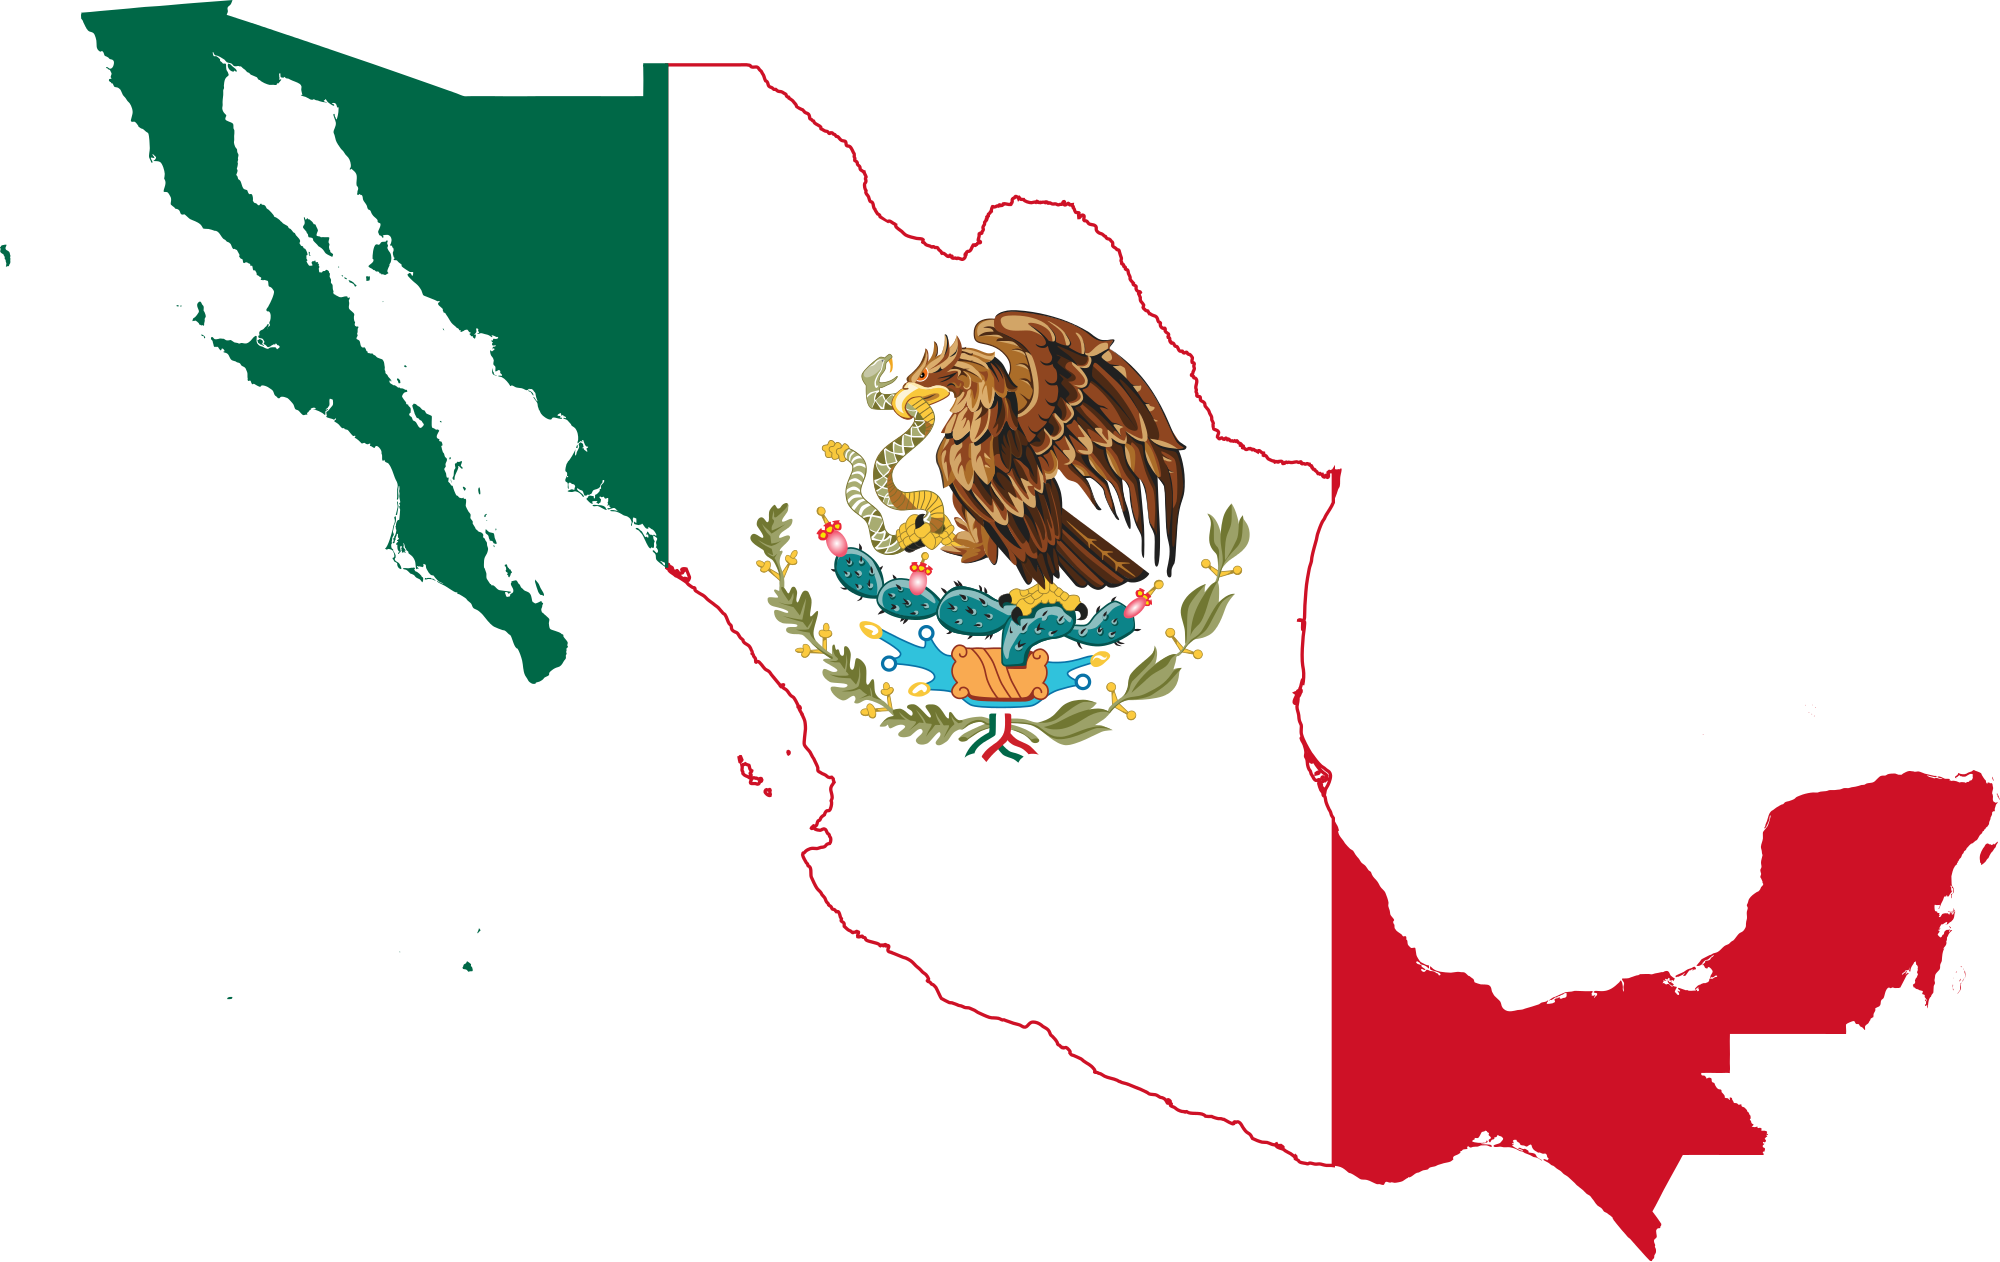 Imágenes De La Bandera De México Imágenes Chidas